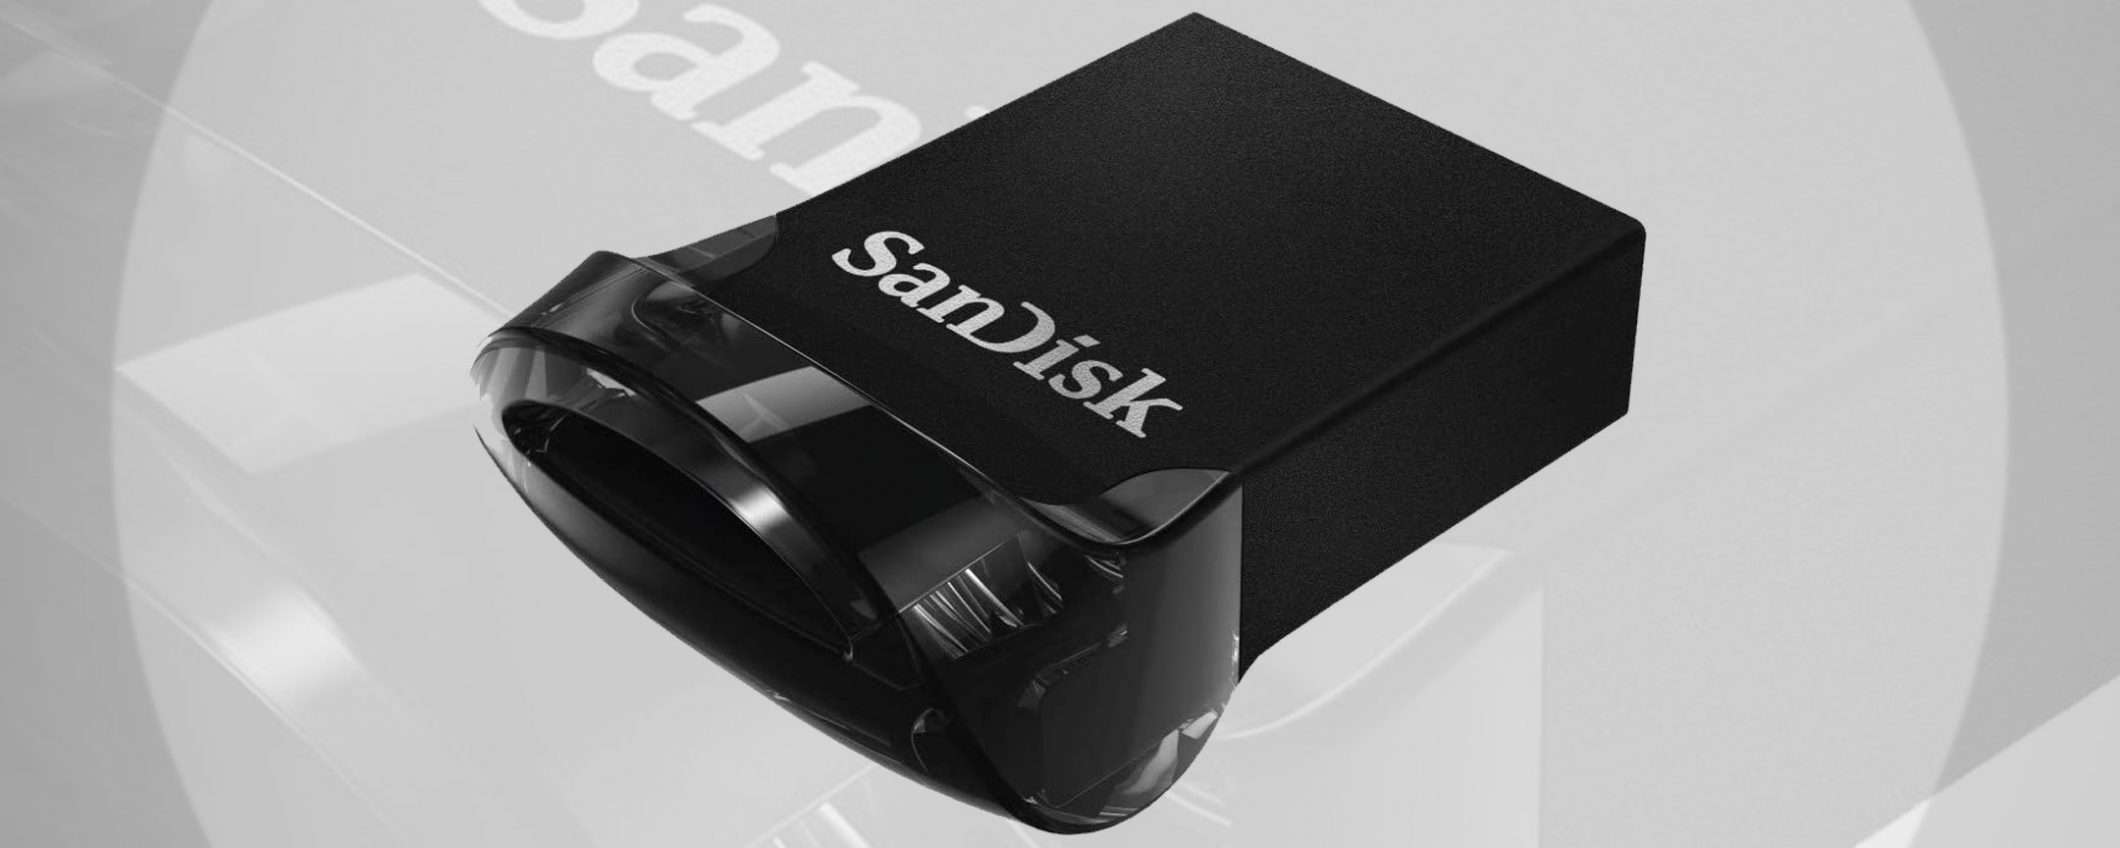 Pendrive SanDisk da 256 GB in offerta su Amazon